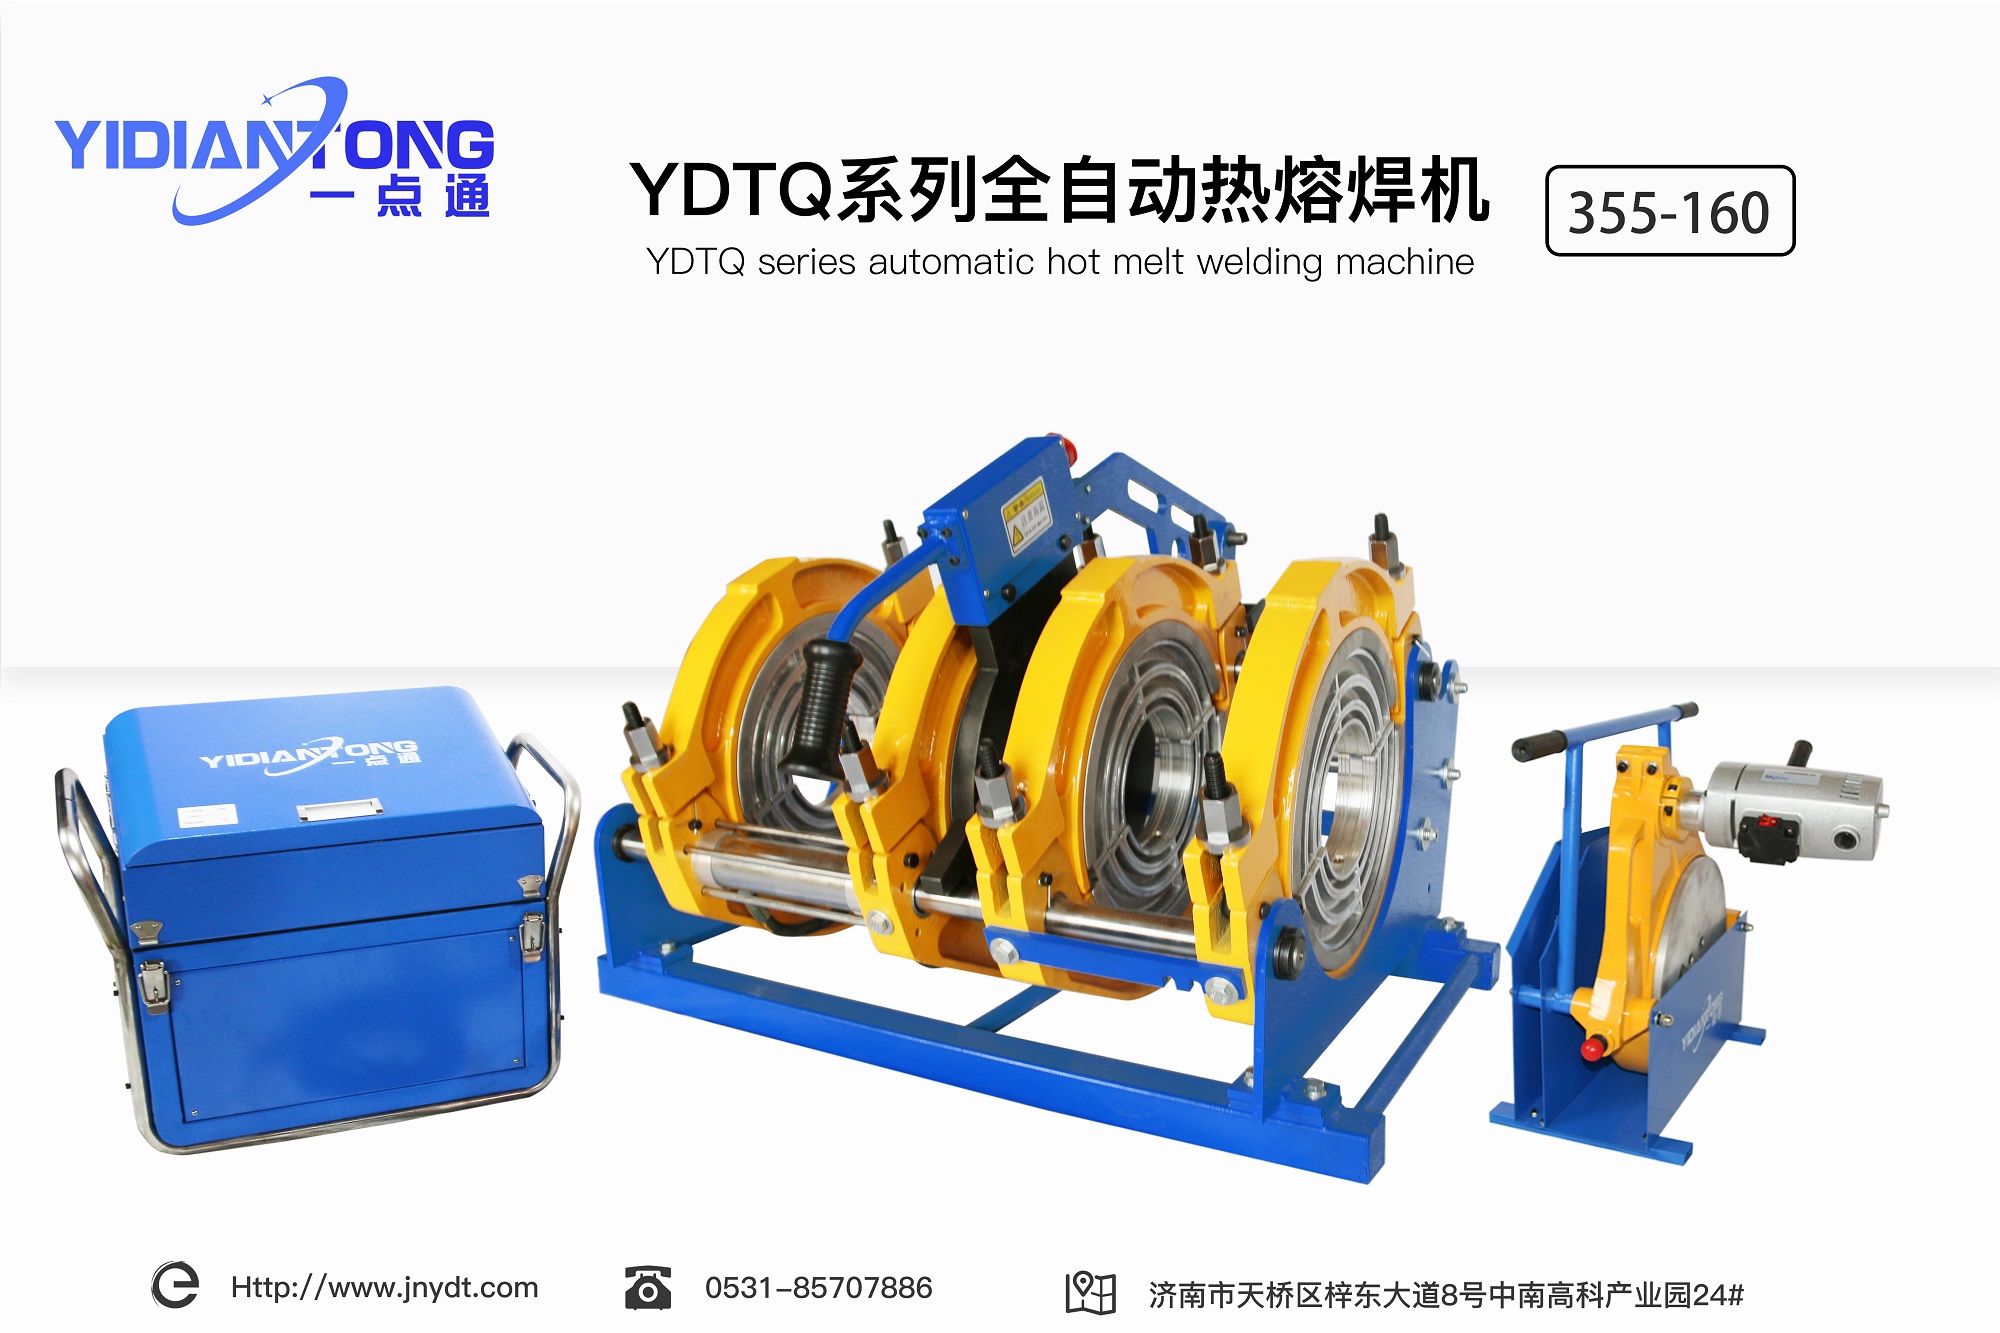 YDTQ系列全自动热熔焊机